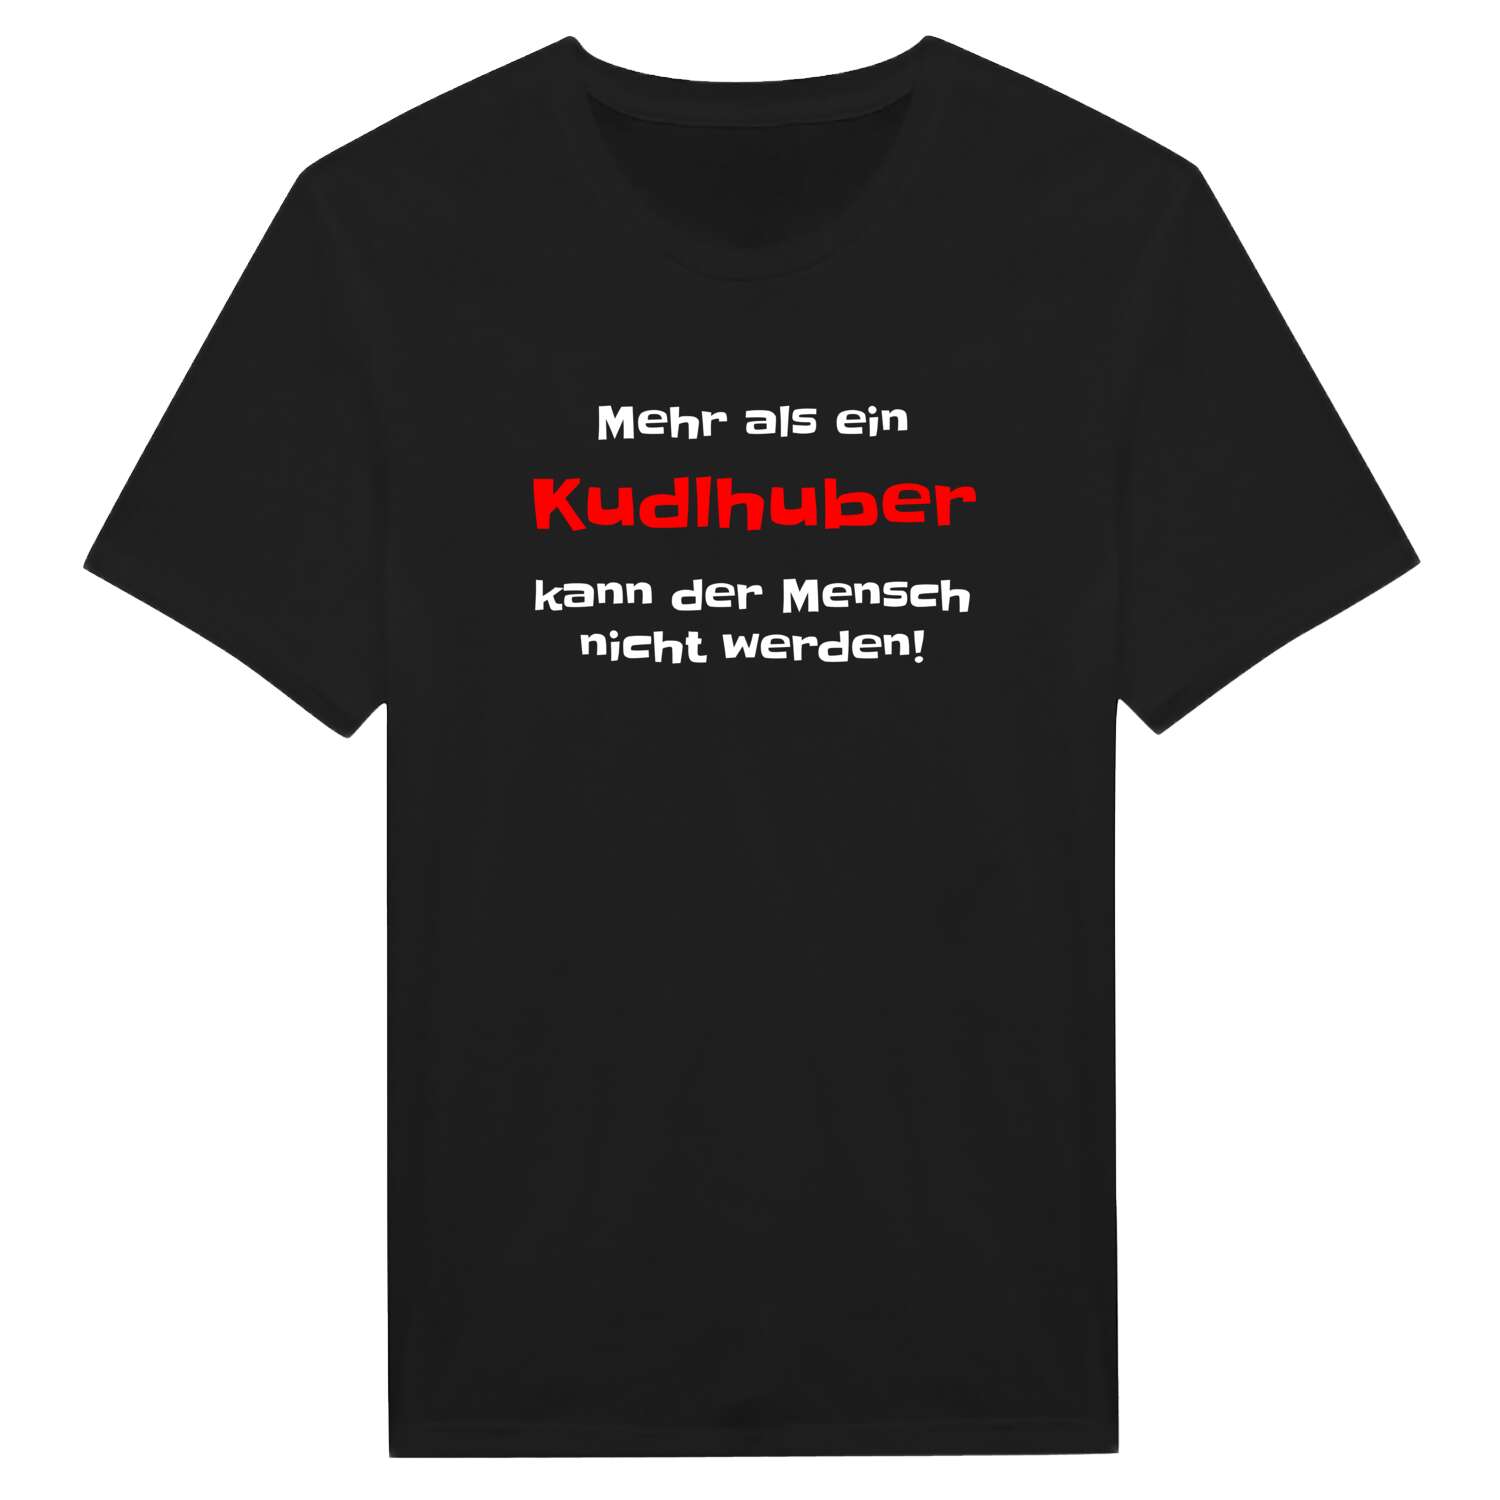 Kudlhub T-Shirt »Mehr als ein«